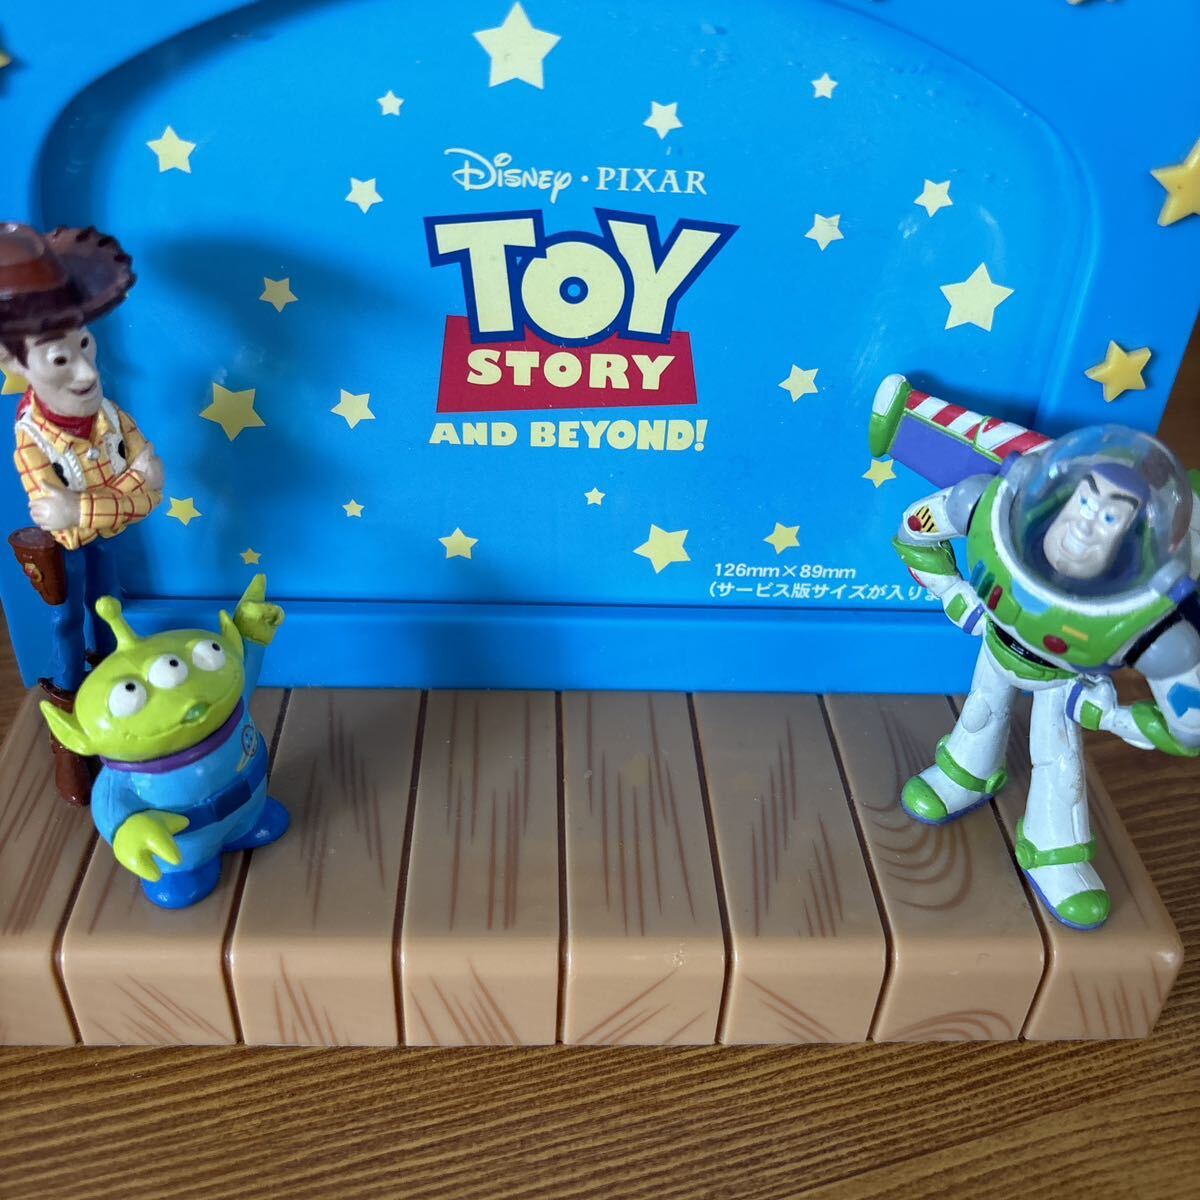  Disney Toy Story Stitch Mickey chip . Dale фотография длина память подставка керамика украшение подлинная вещь фигурка 